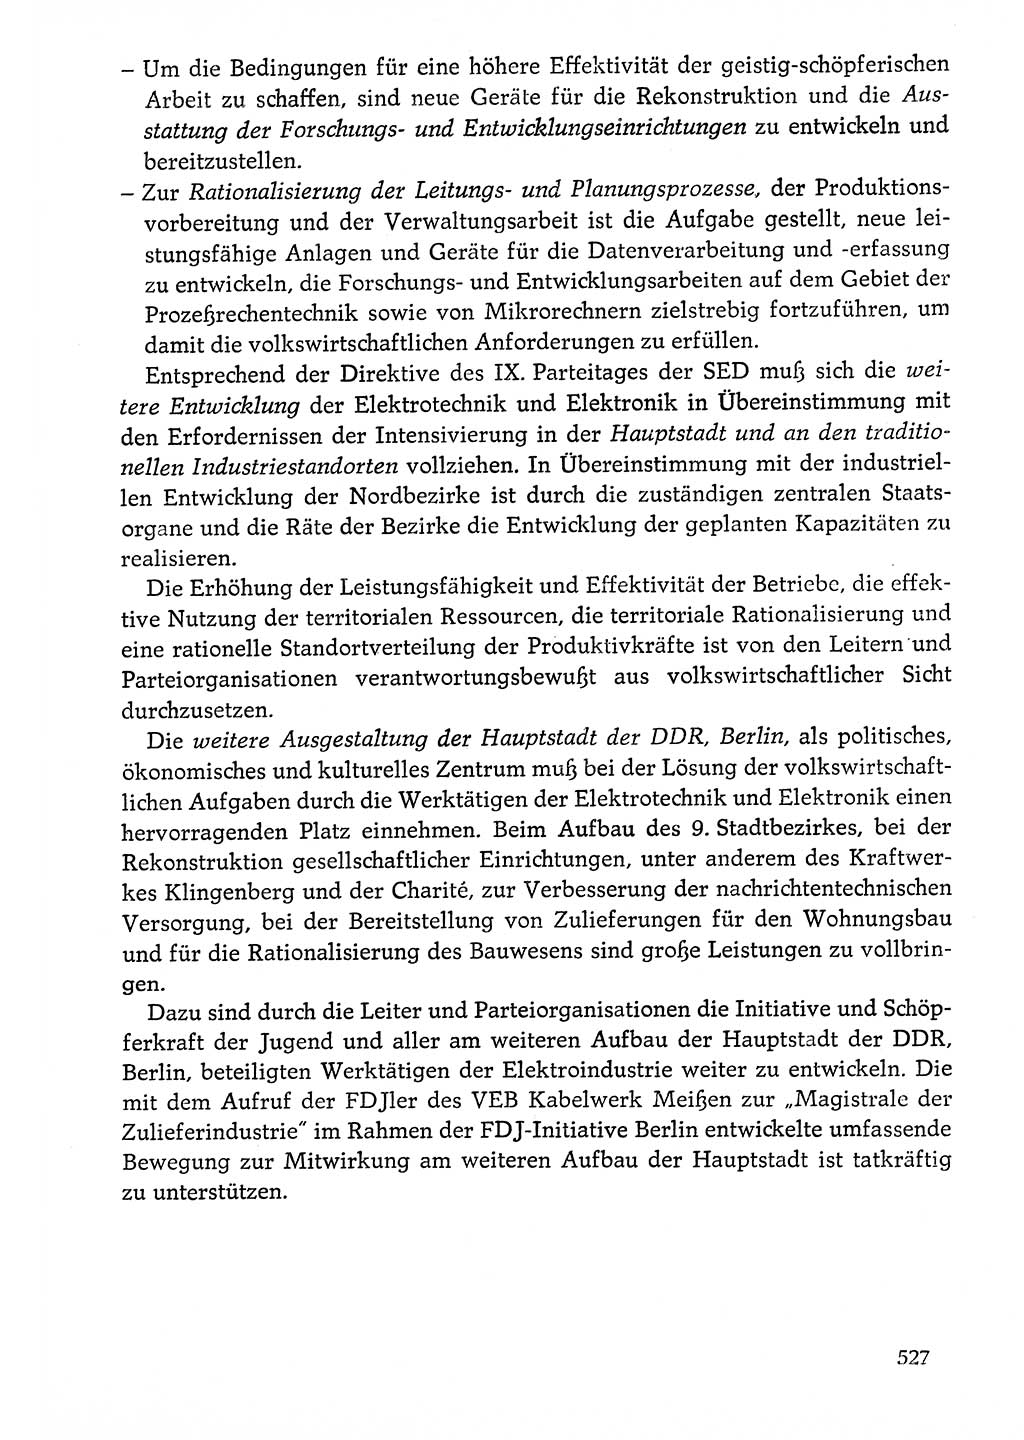 Dokumente der Sozialistischen Einheitspartei Deutschlands (SED) [Deutsche Demokratische Republik (DDR)] 1976-1977, Seite 527 (Dok. SED DDR 1976-1977, S. 527)